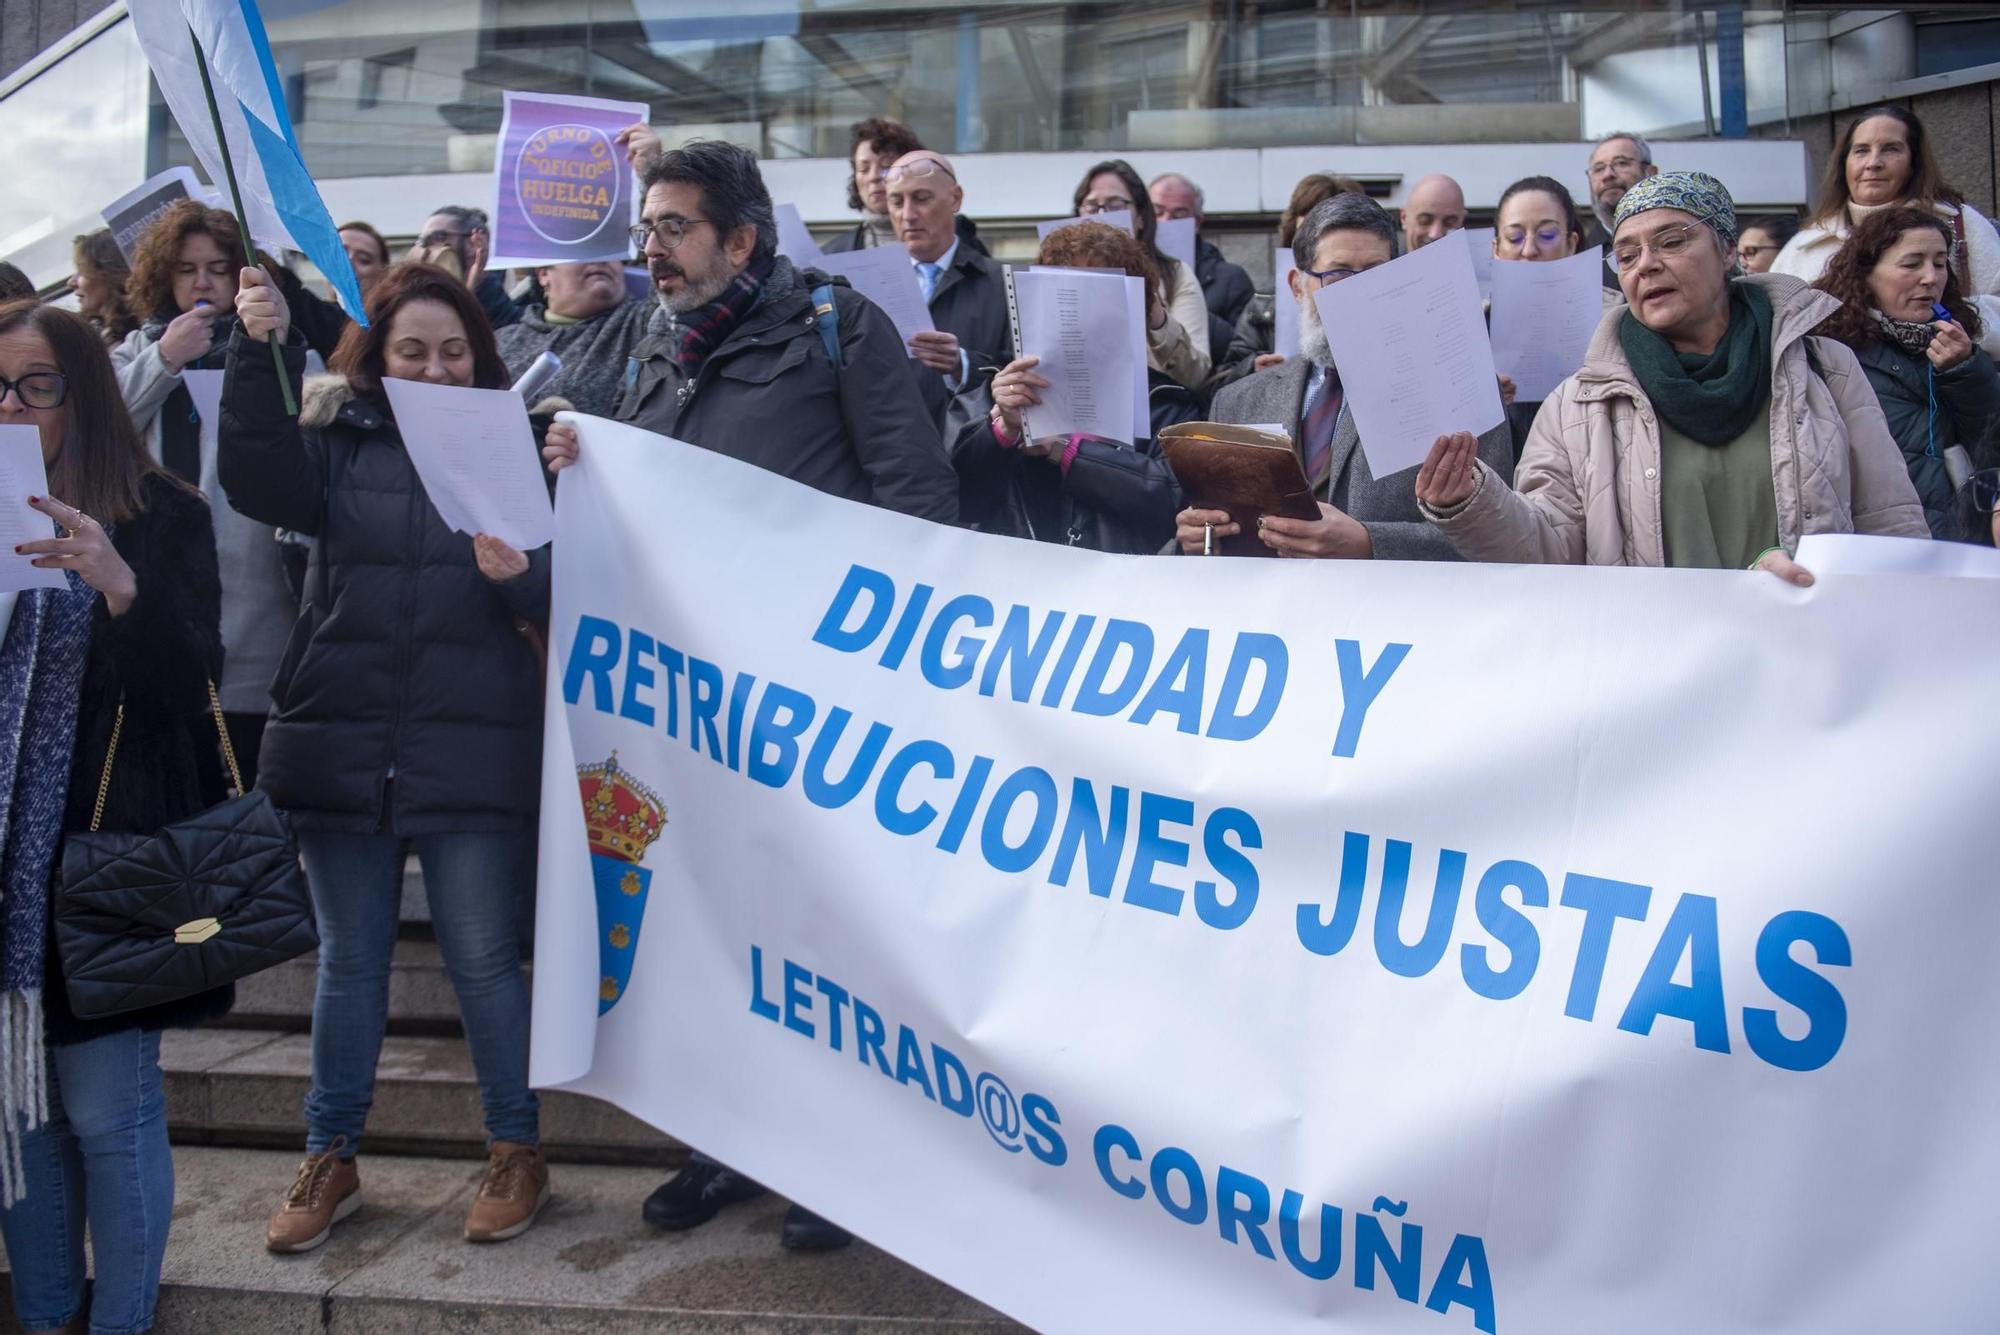 Protesta en A Coruña de los abogados del turno de oficio, en huelga